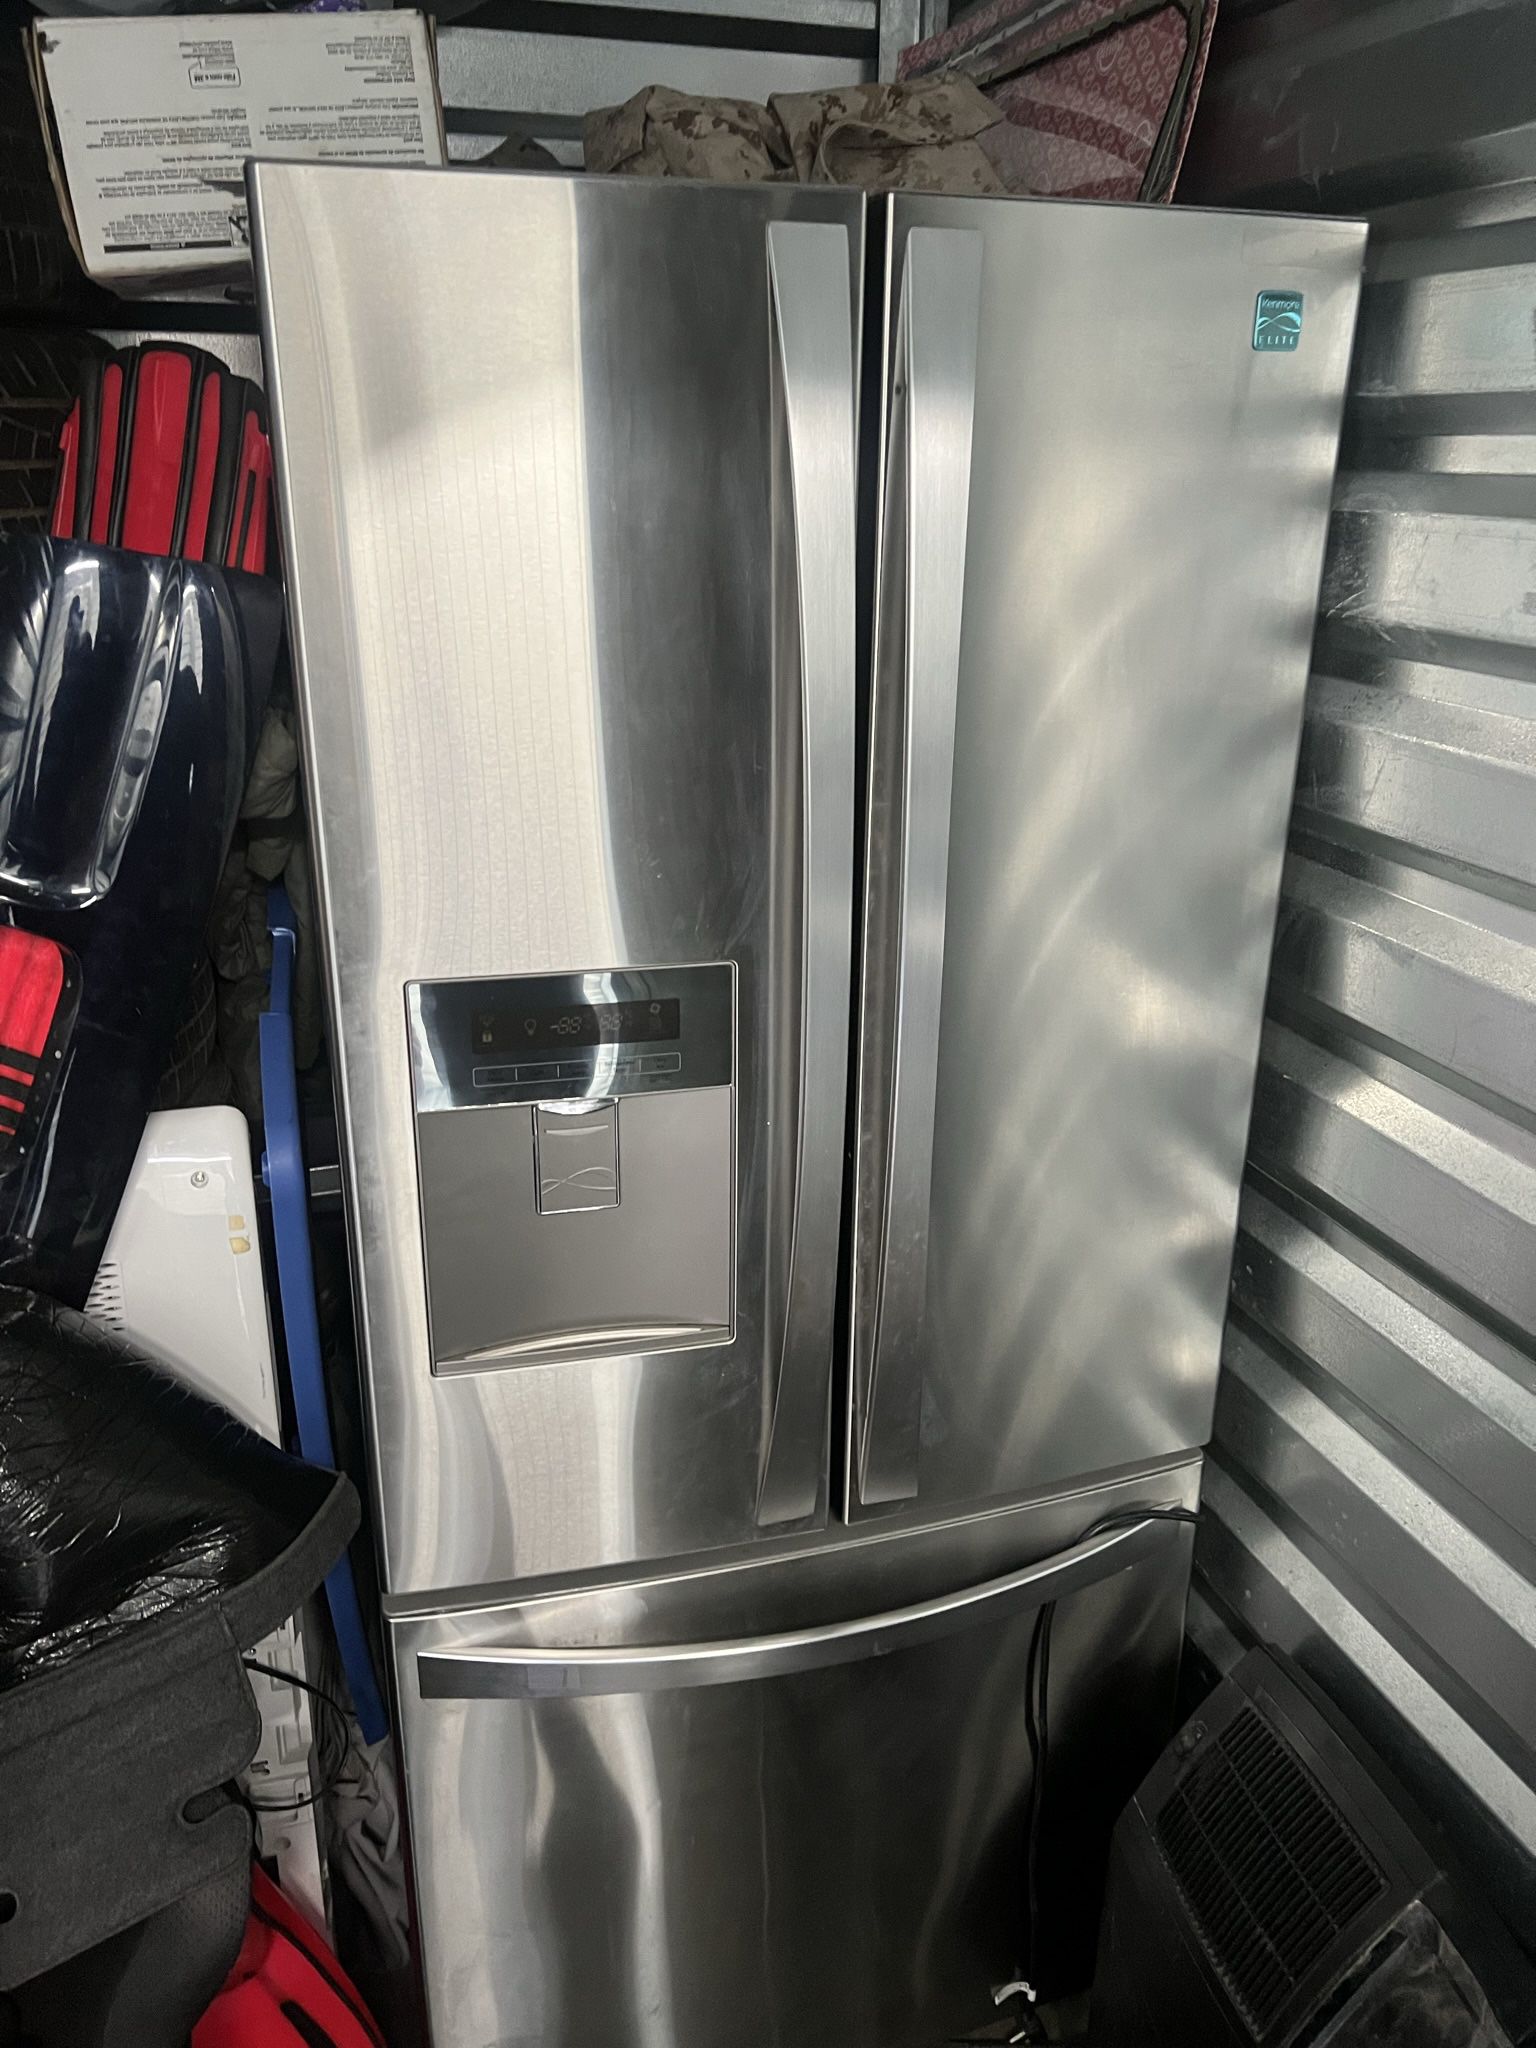 Kenmore Elite Refrigerator 